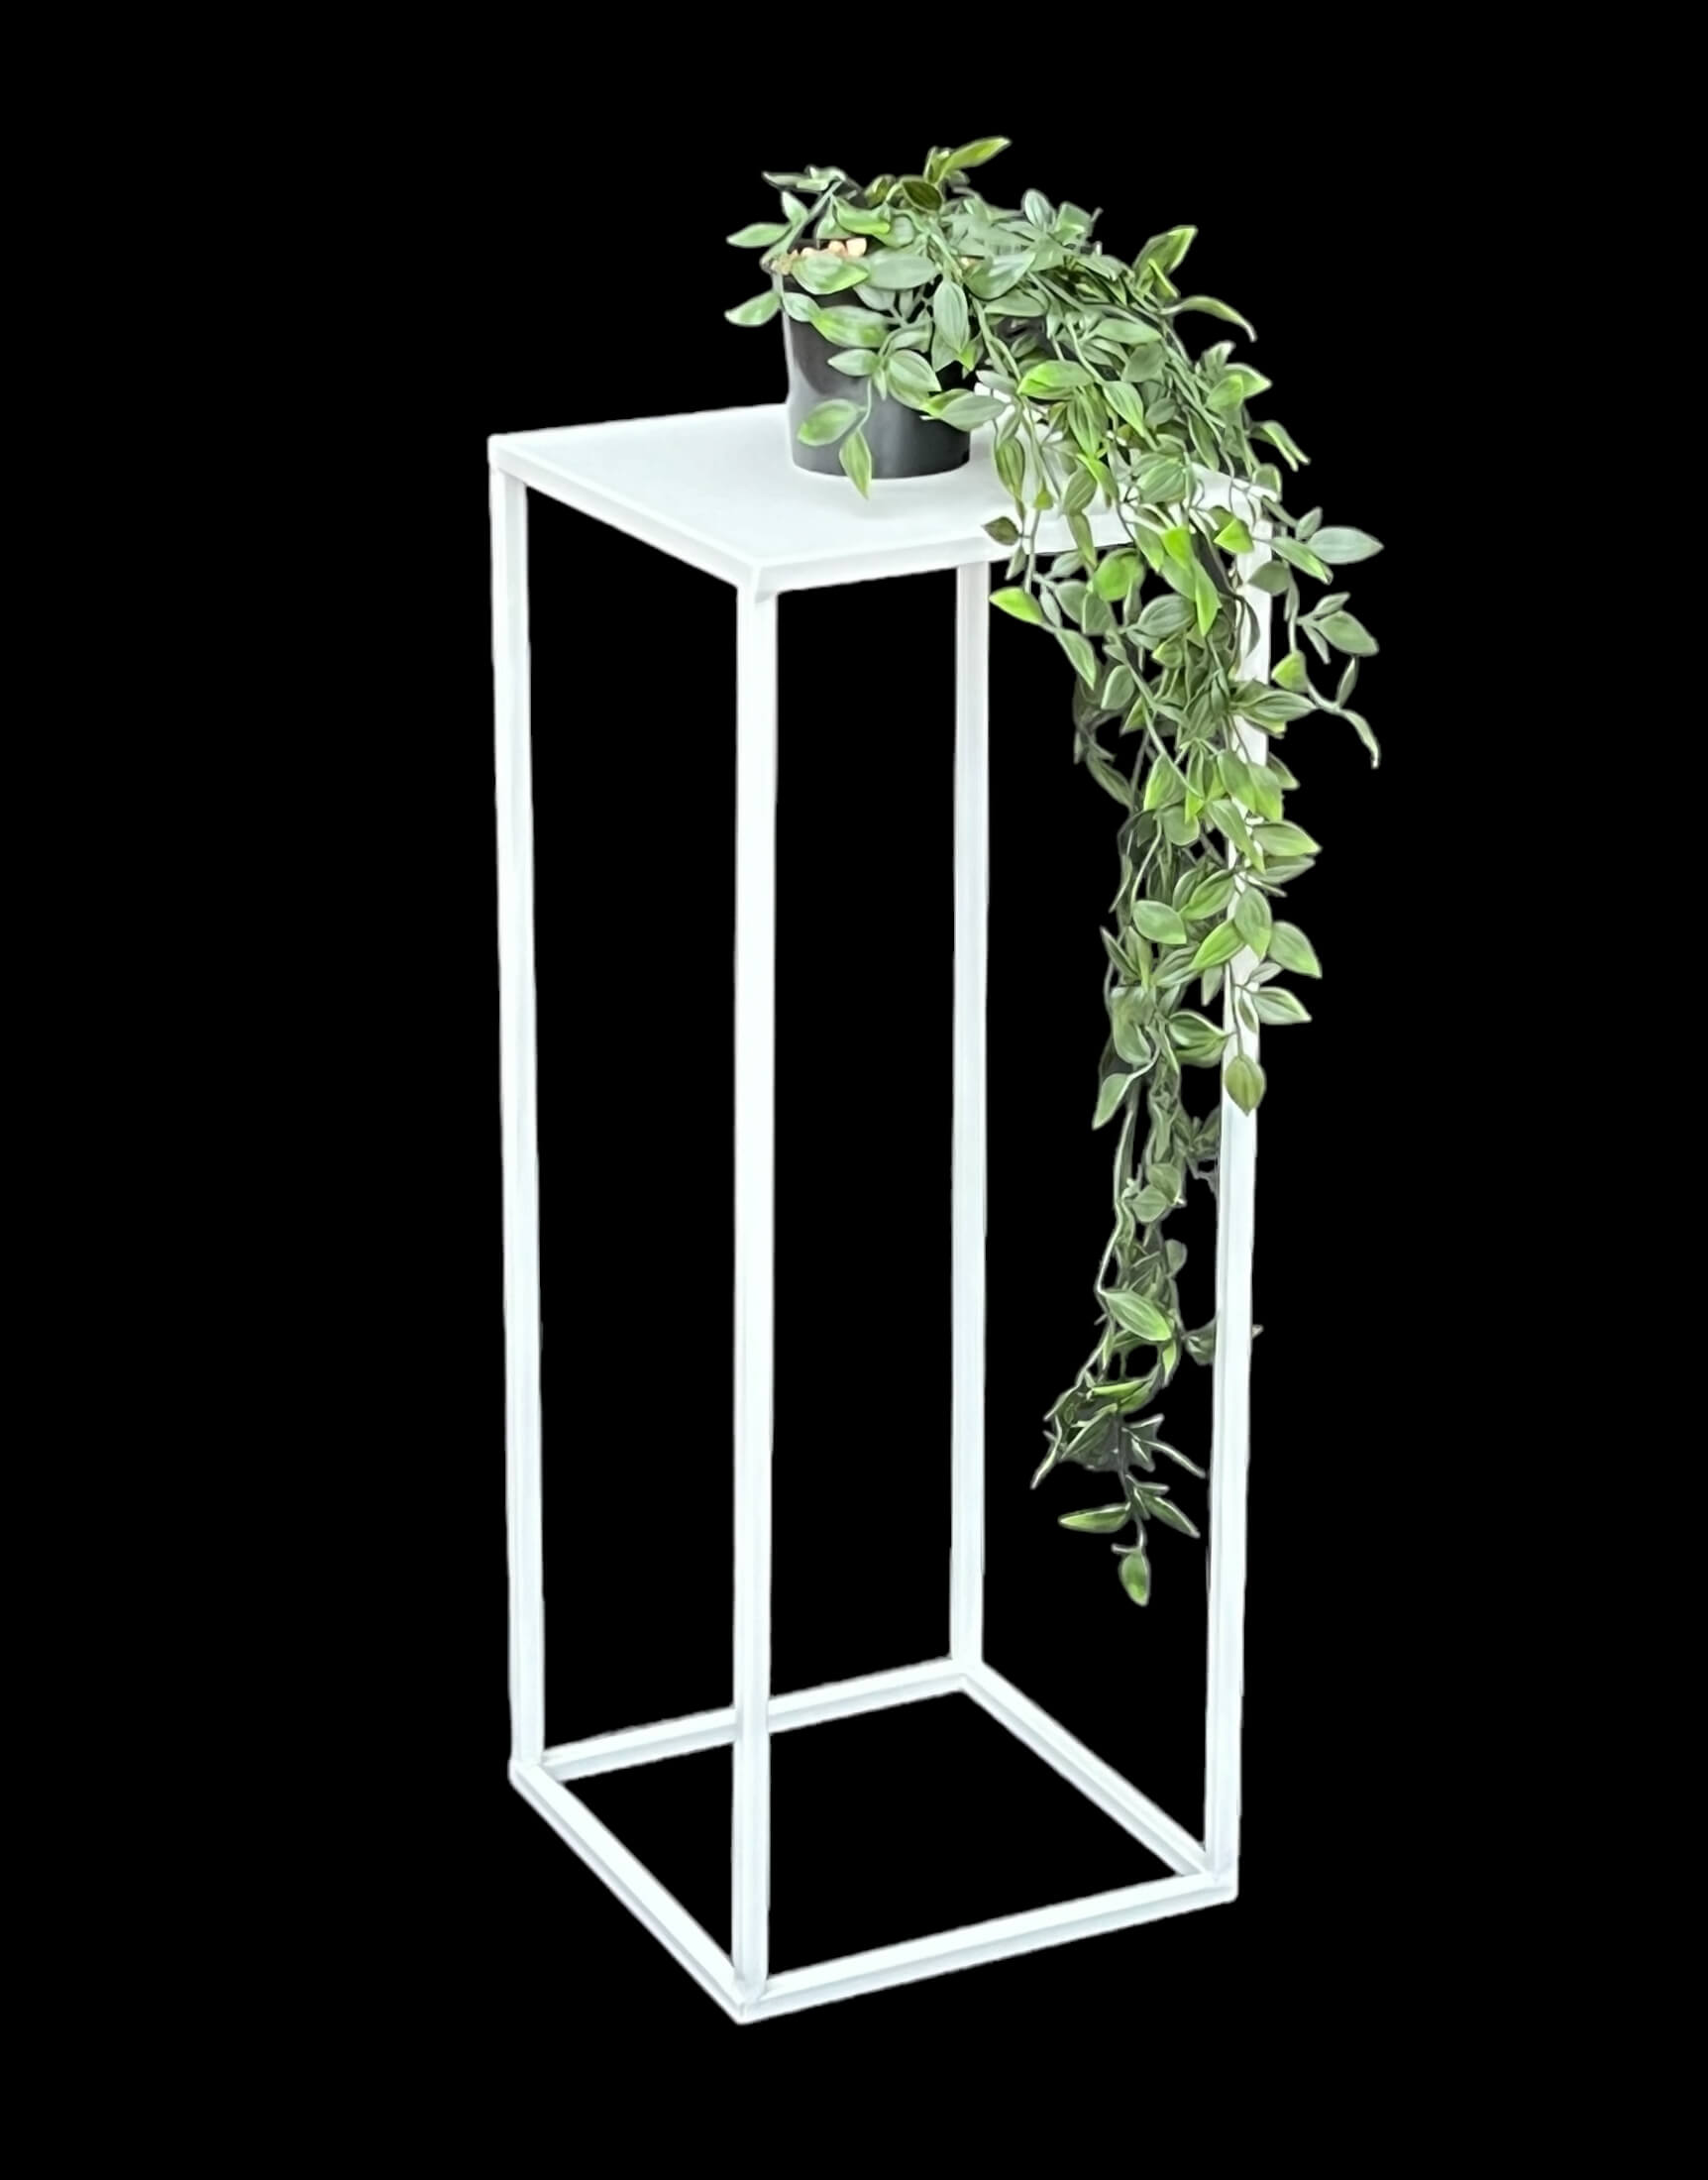 DanDiBo Blumenhocker Metall M cm Pflanzenhocker 96482 Blumenständer Beistelltisch - 60 Weiß Eckig Pflanzenständer Modern DanDiBo-Ambiente Blumensäule